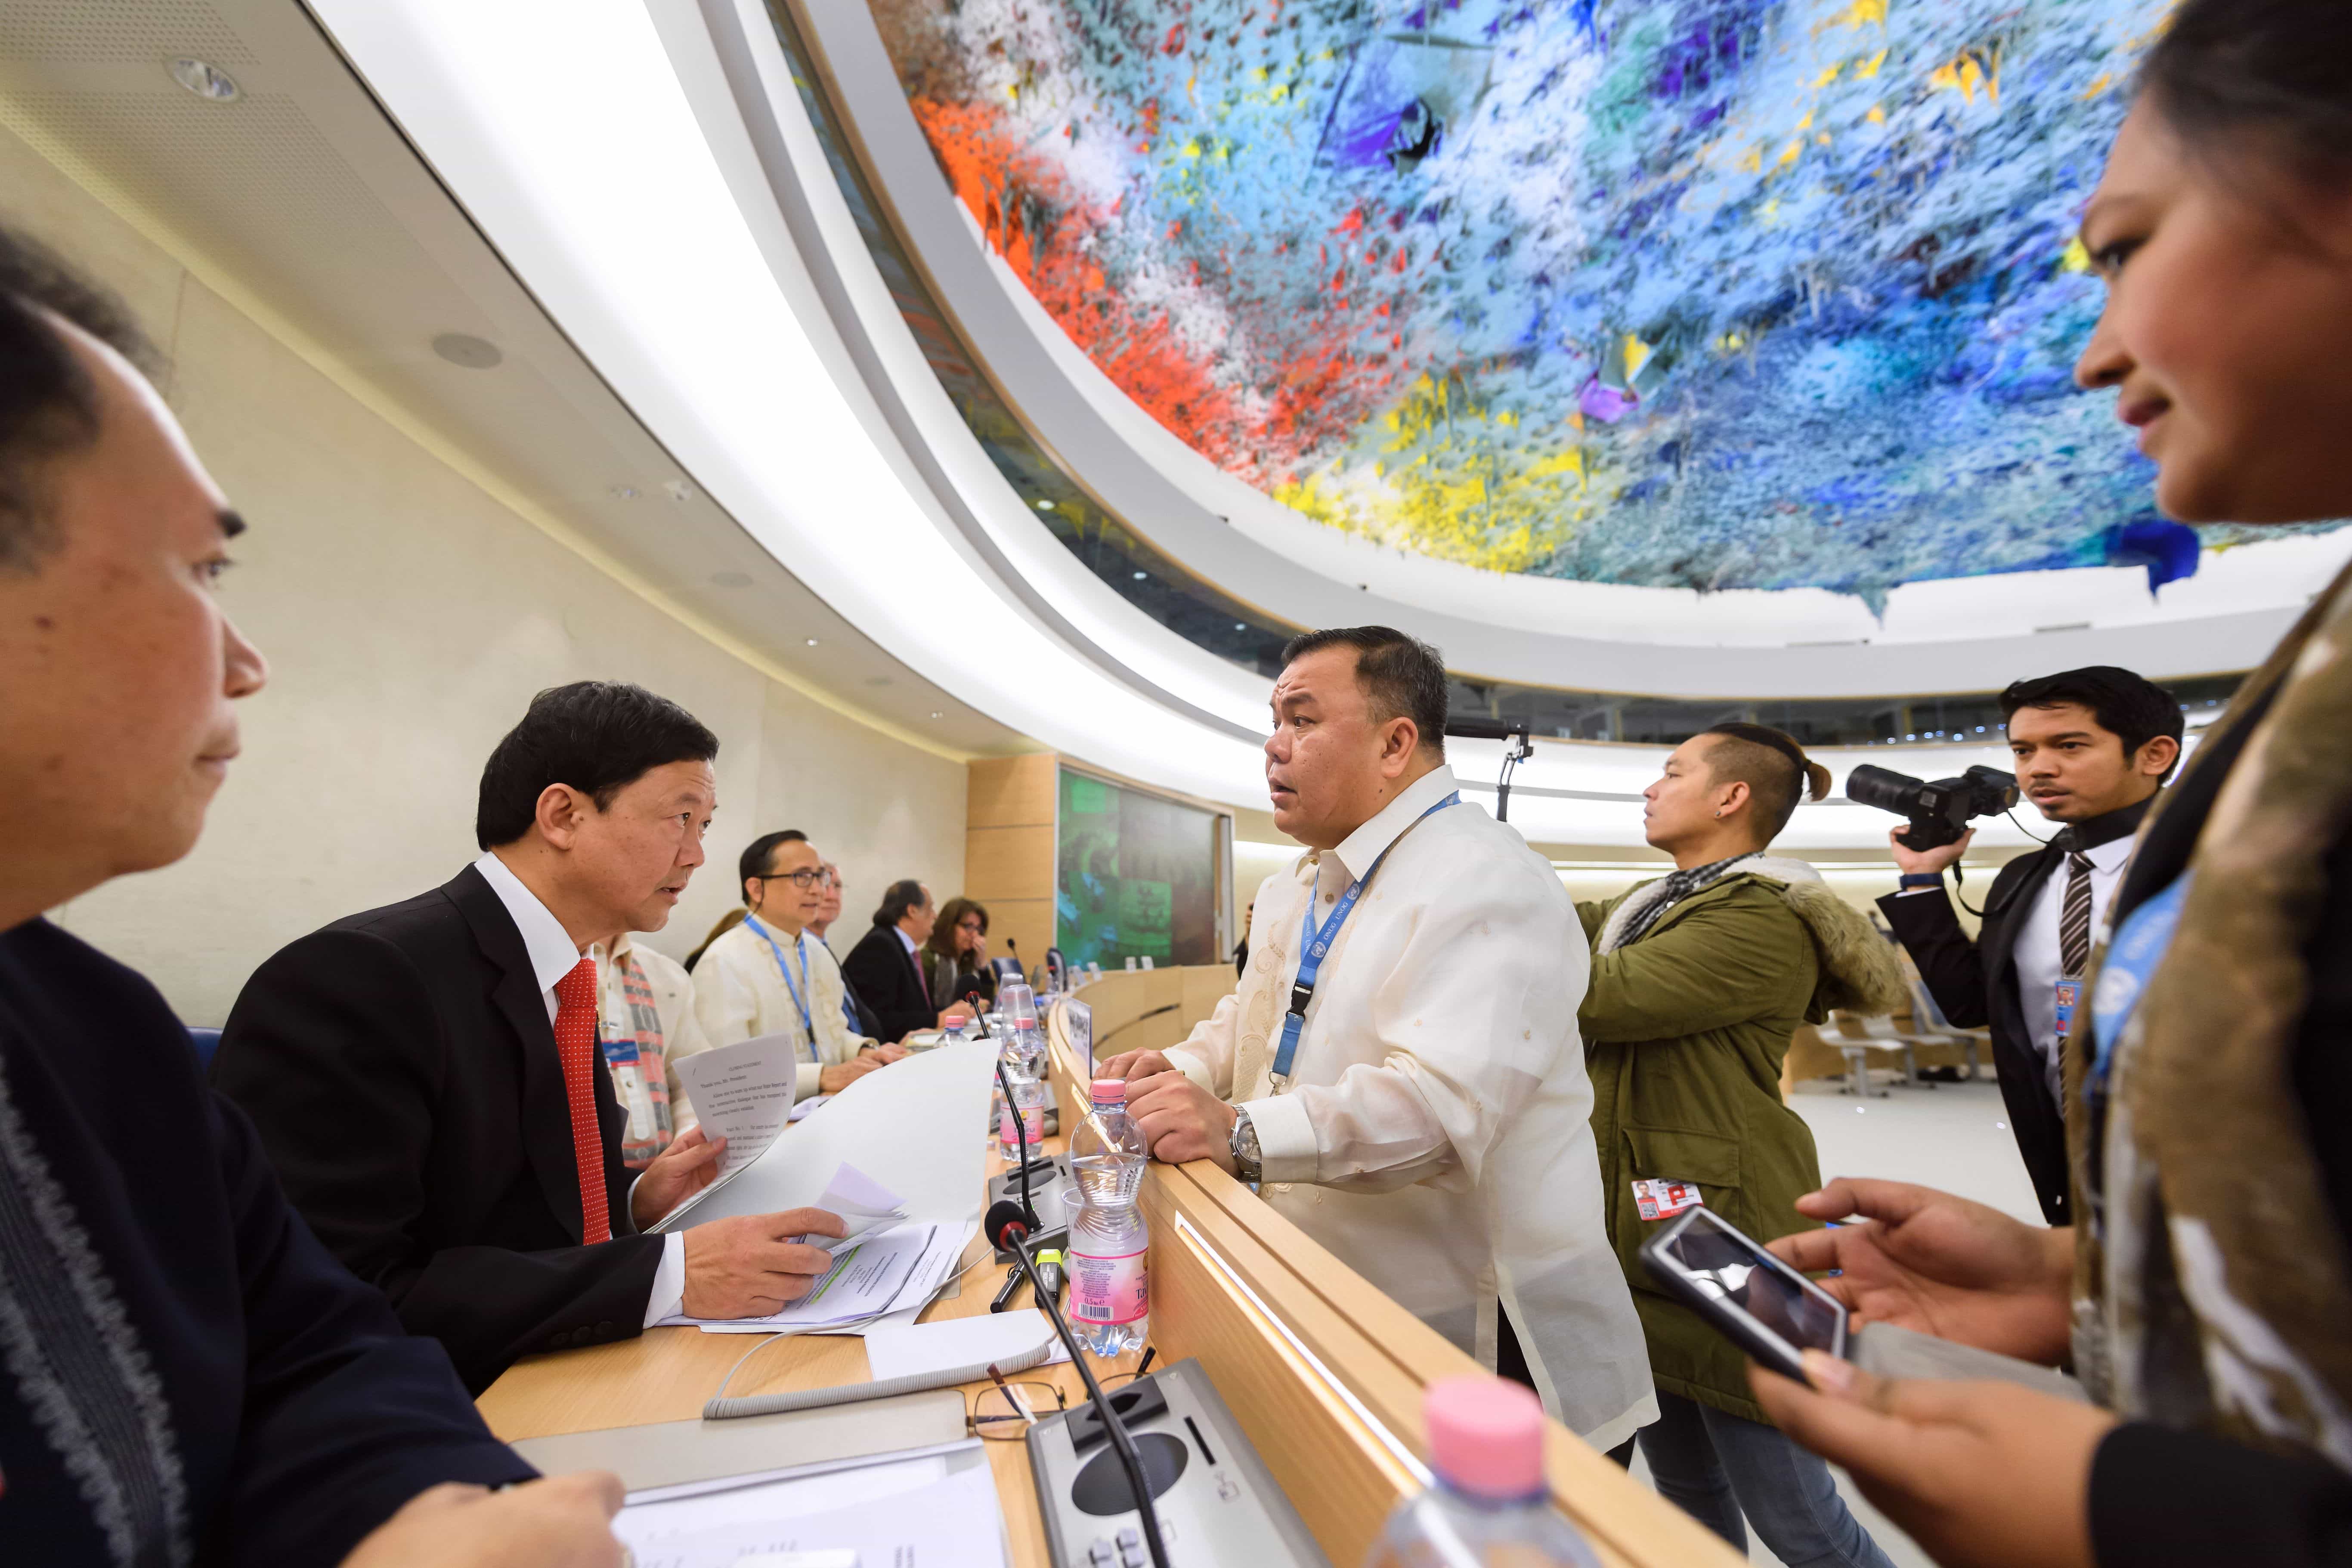 El Jefe de la delegación de Filipinas habla con un hombre antes del comienzo del Examen Periódico Universal de Filipinas por parte de la Oficina del Alto Comisionado de las Naciones Unidas para los Derechos Humanos, el 8 de mayo de 2017, FABRICE COFFRINI/AFP/Getty Images